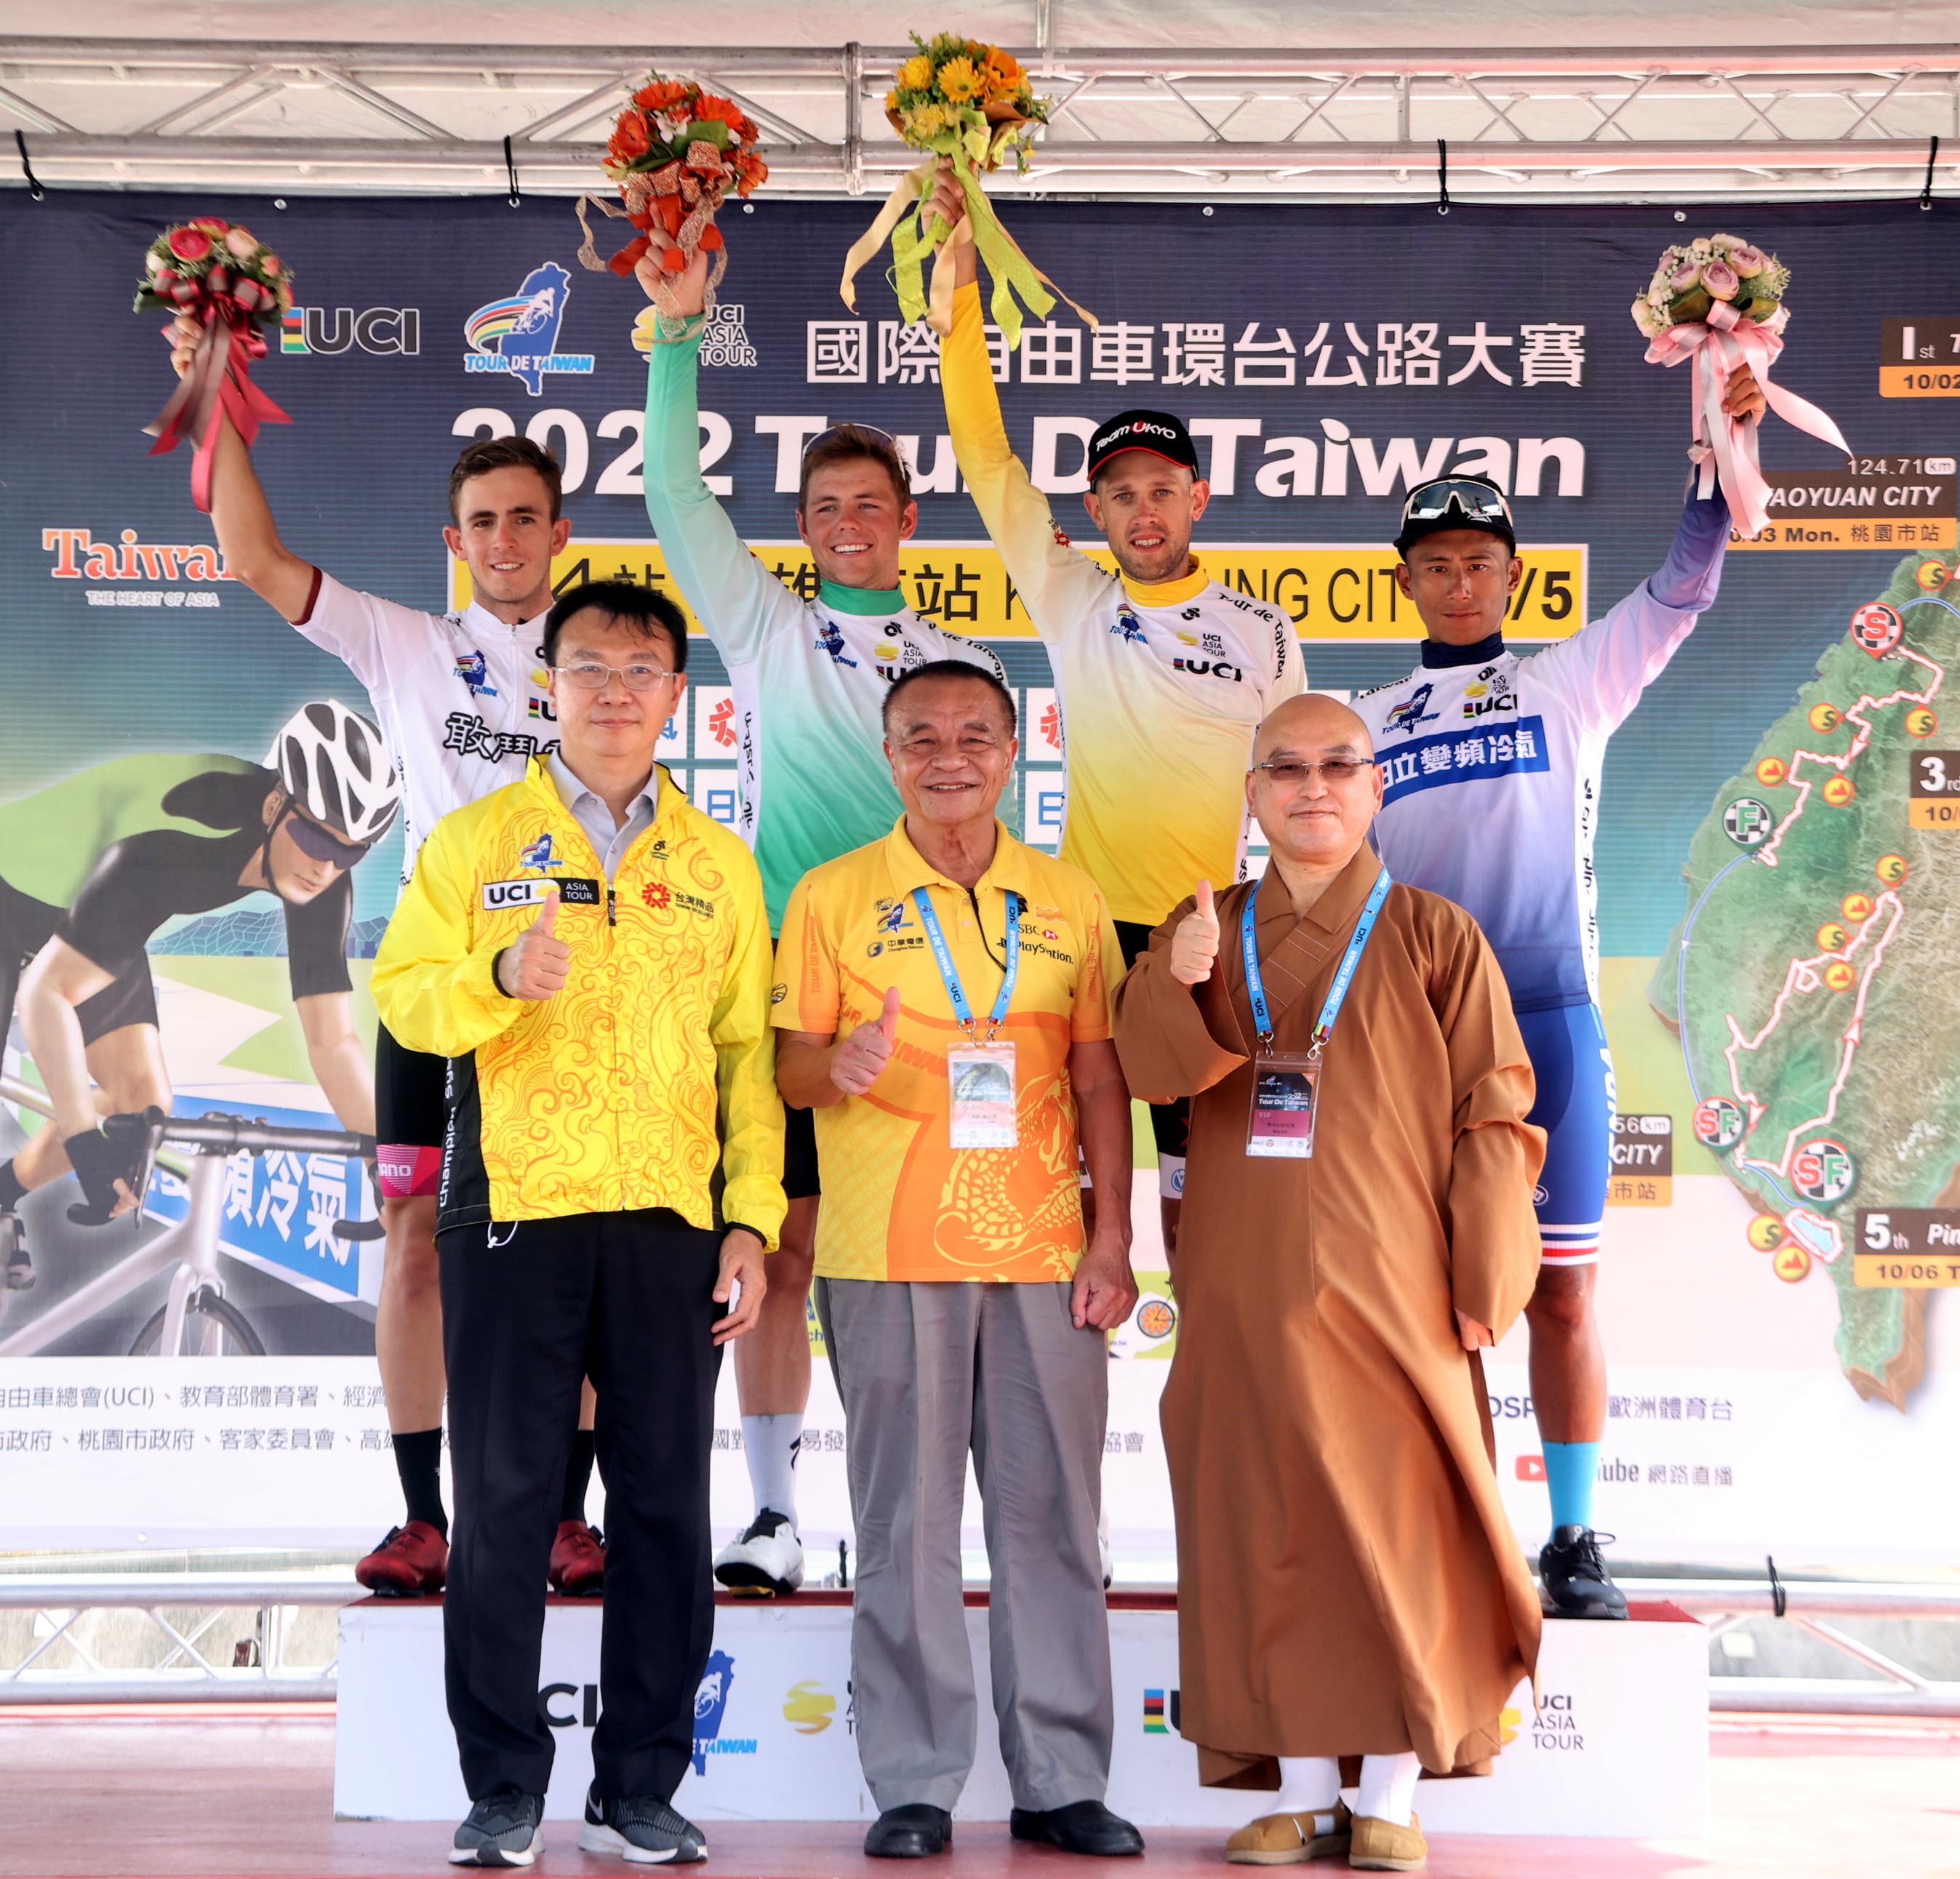 高雄市站四位冠軍衫得主與出席頒獎典禮的貴賓合影。Tour de Taiwan 國際自由車環台賽提供